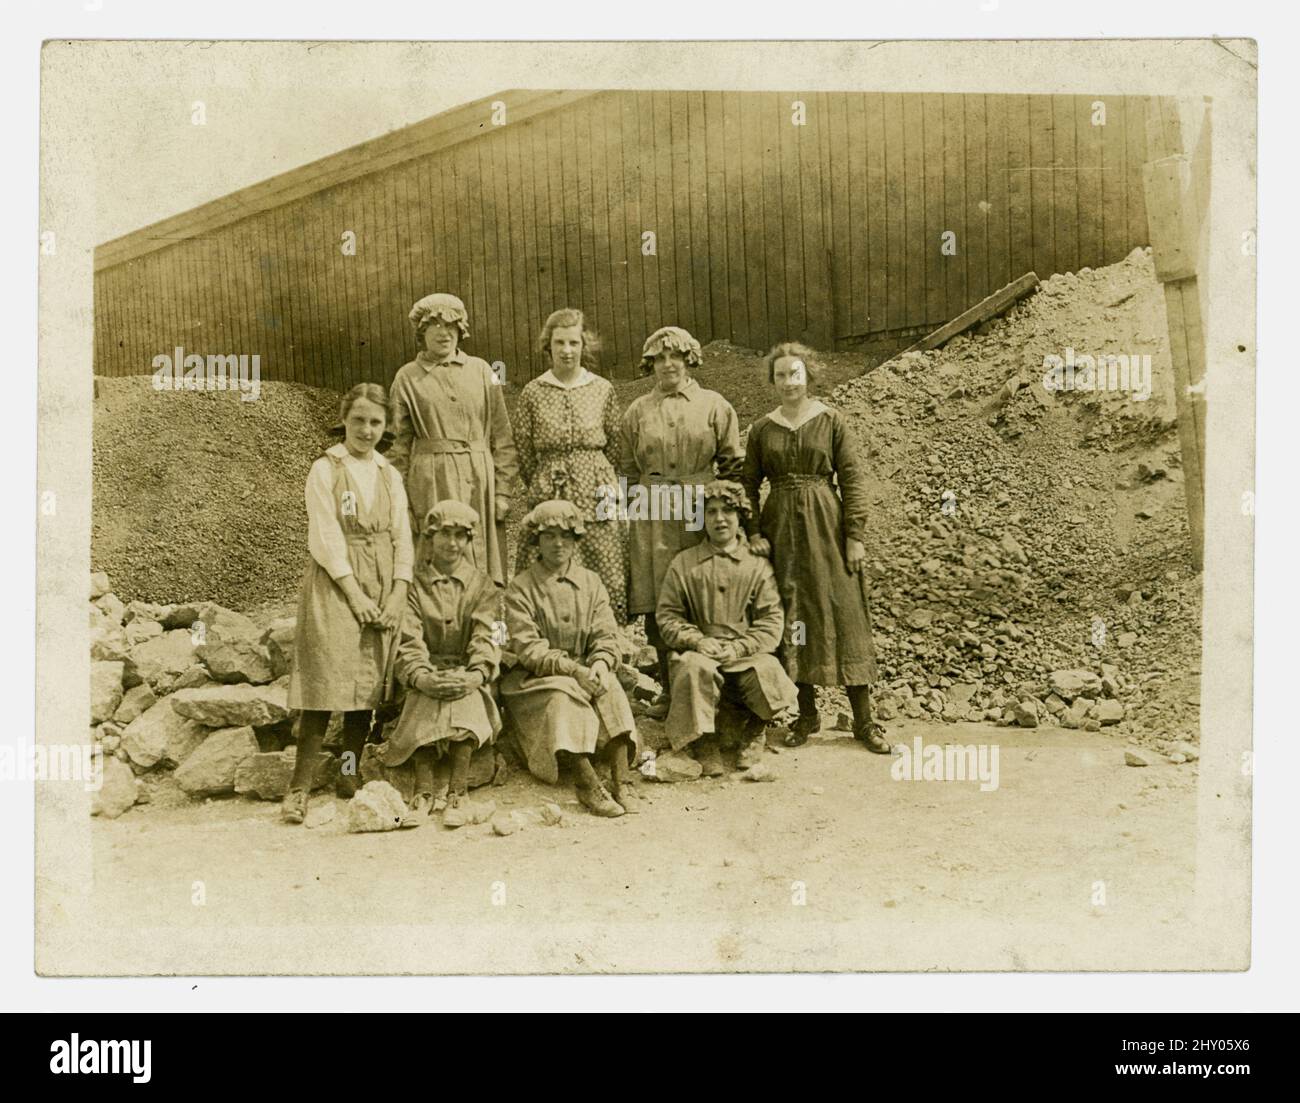 Photo originale de WW1 ans d'un groupe de femmes en carrière, faisant le travail d'hommes qui sont allés à la guerre. Les filles portent l'uniforme et sont assises parmi la pierre de quarry. Runcorn, Cheshire, R.-U. vers 1916. Banque D'Images